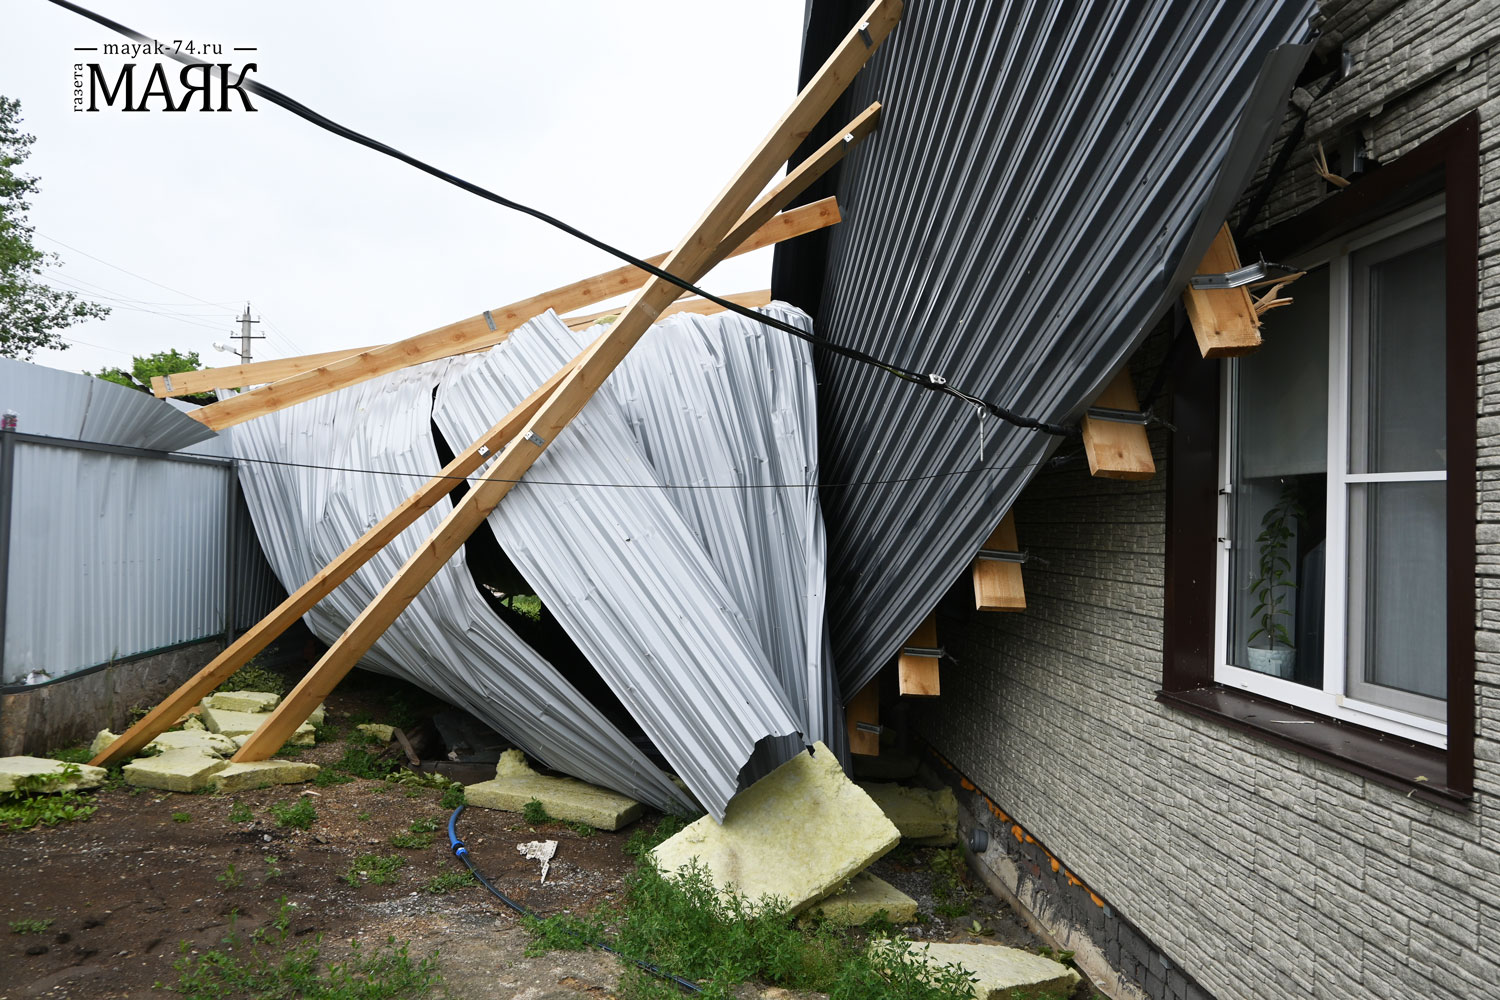 Ураган в поселке Красноармейского района снёс крыши и повредил дом